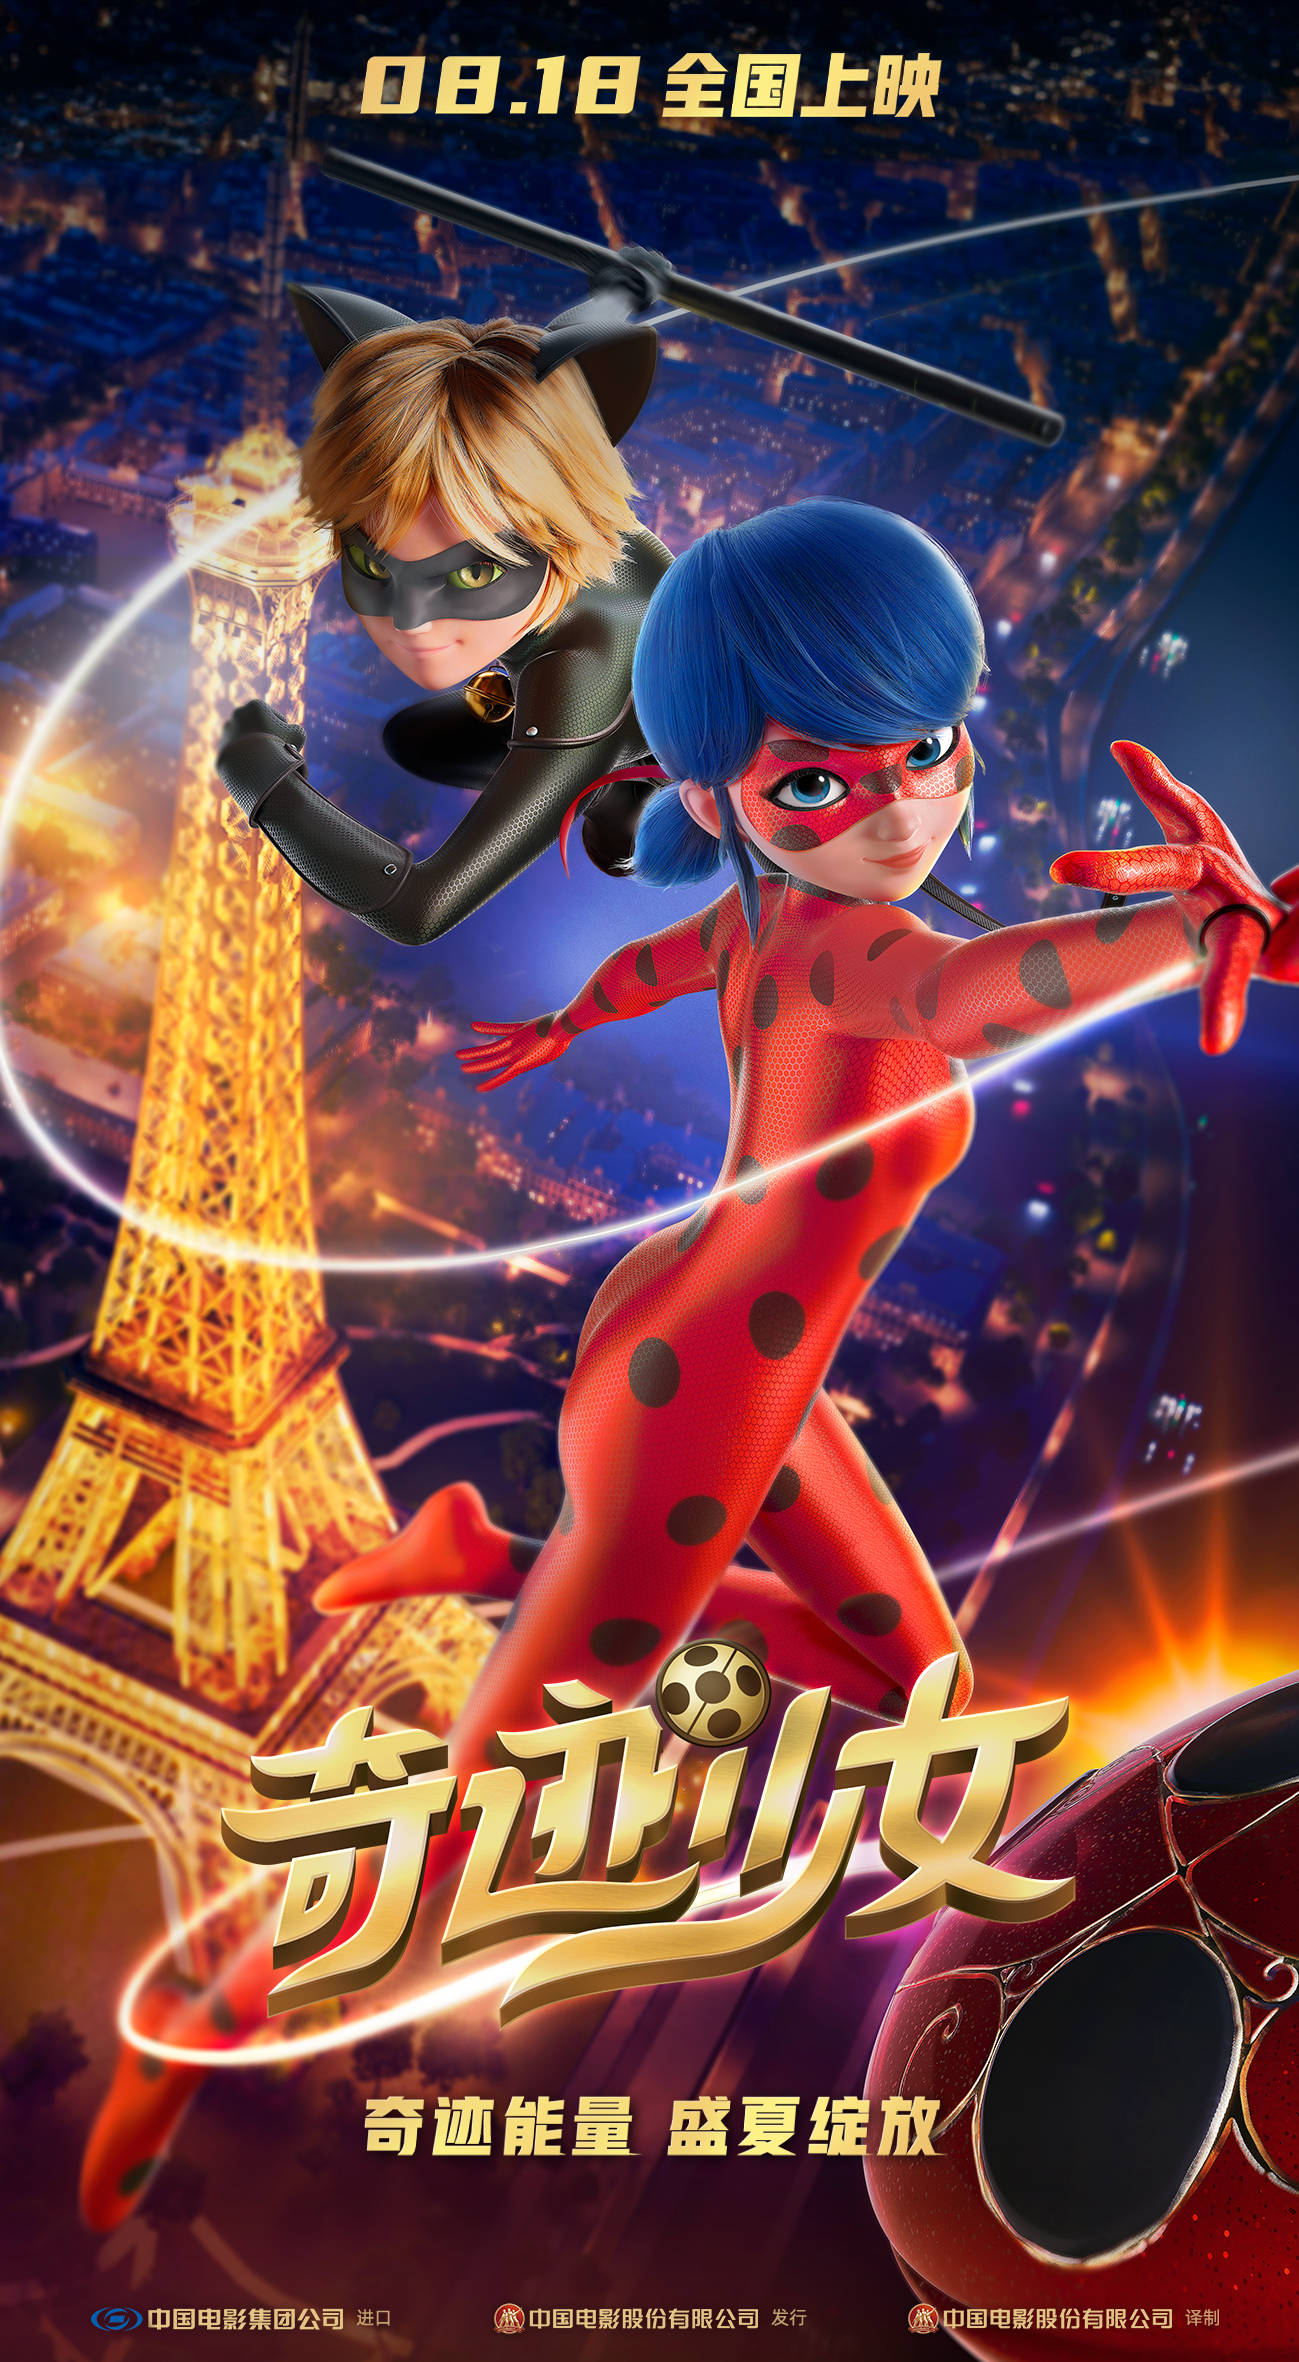 动画电影《奇迹少女》定档8月18日 全球首位少女超级英雄酷飒来袭!